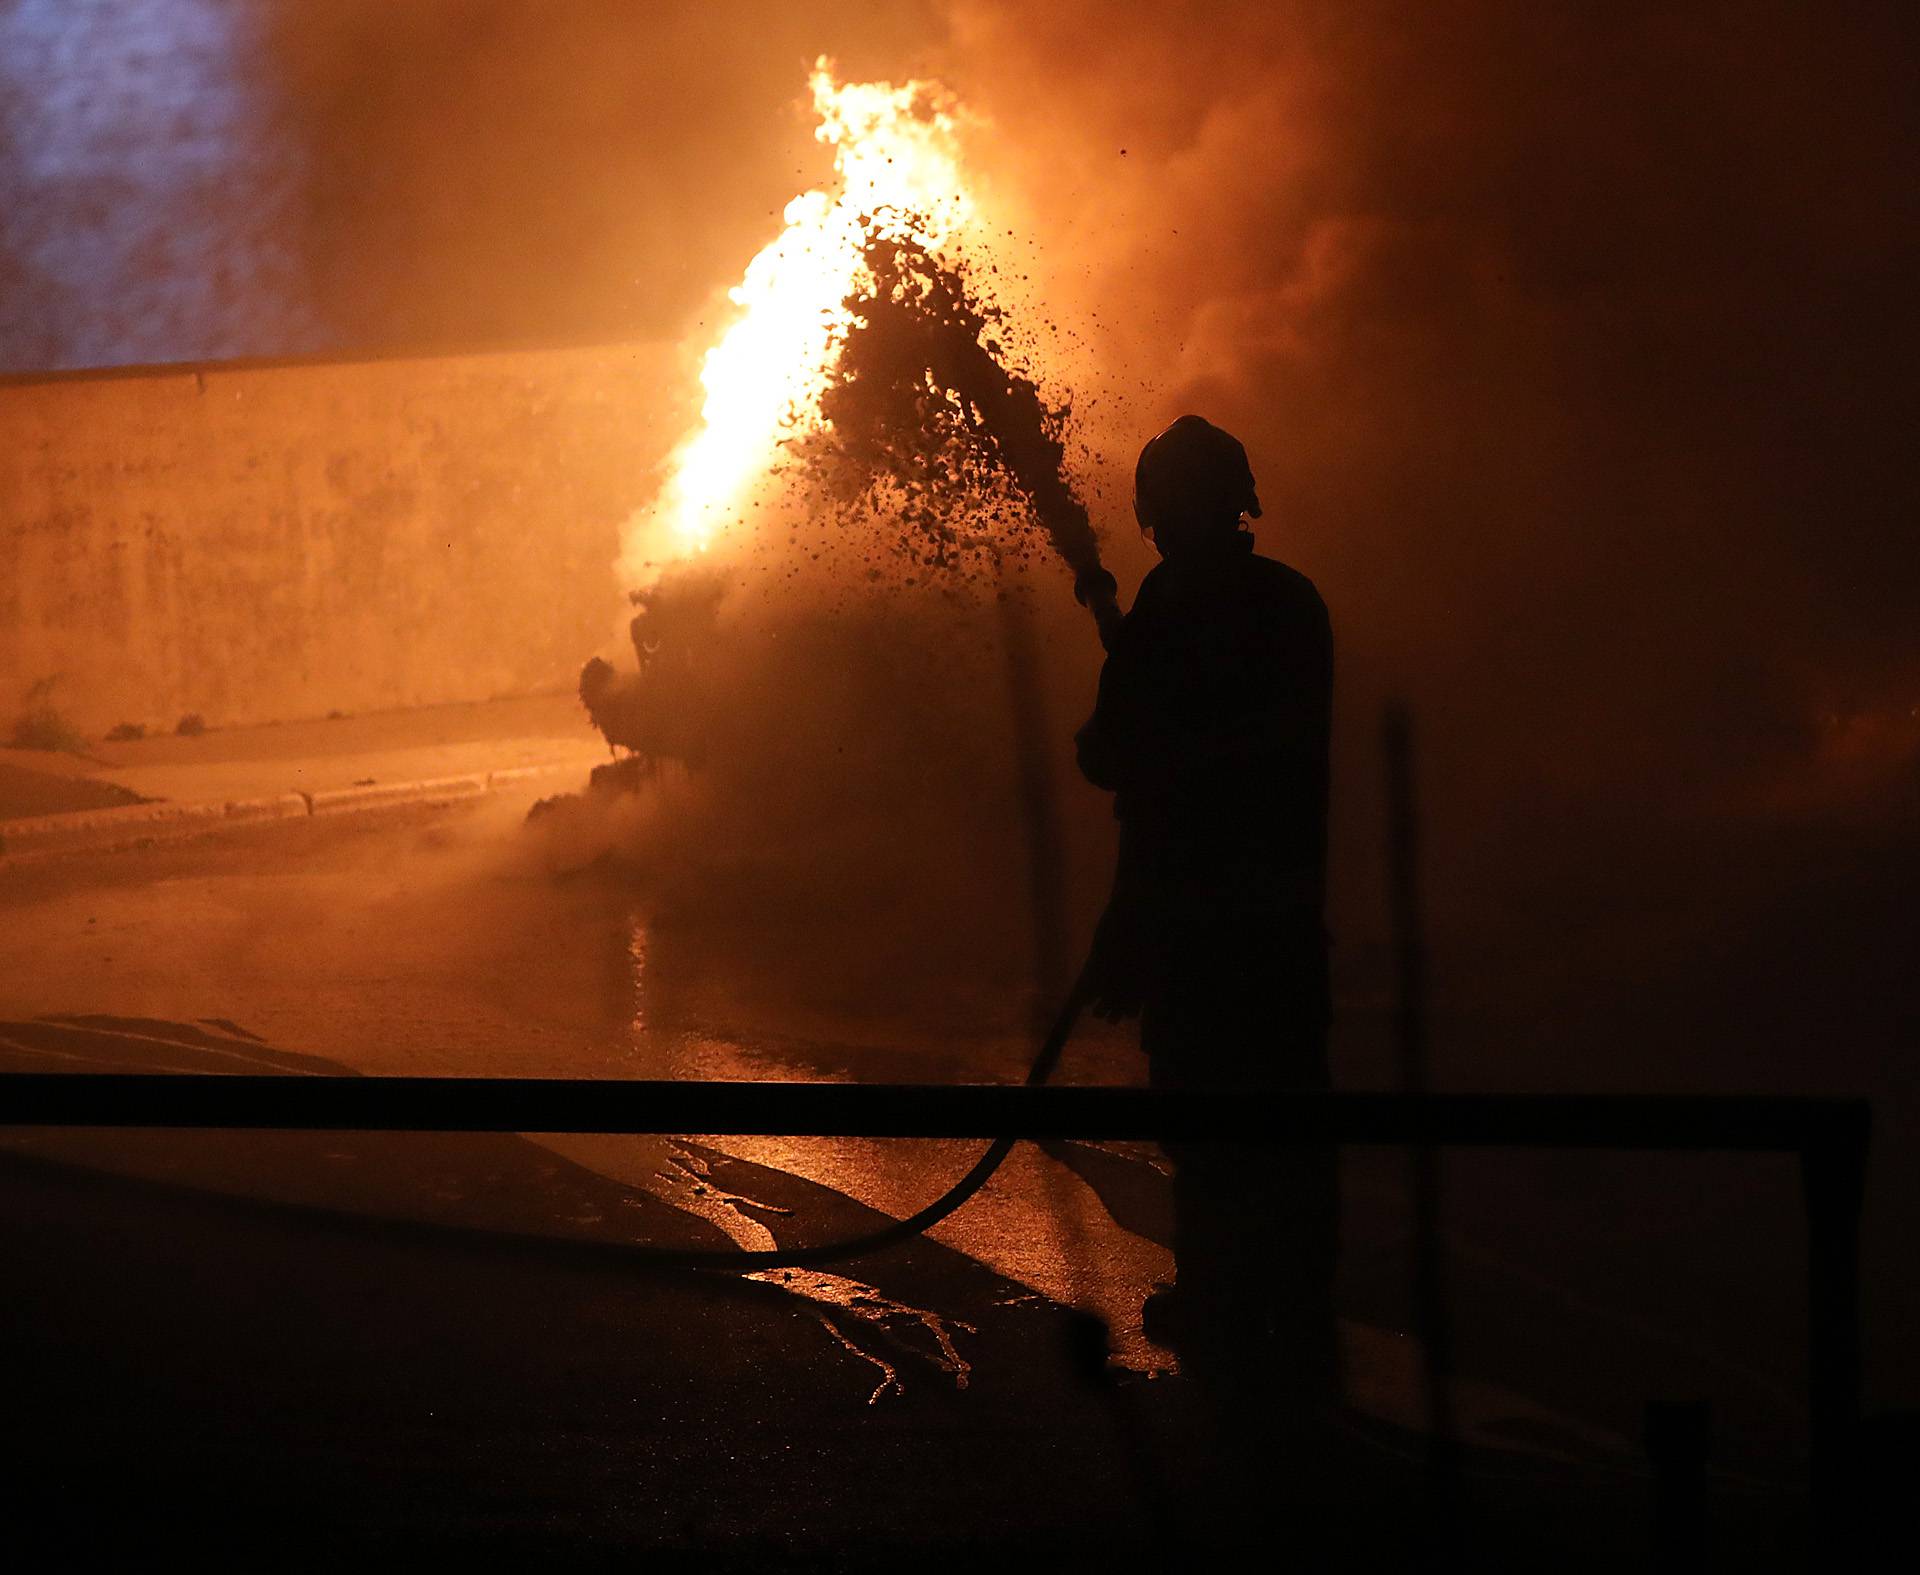 Buktinja kod zadarskih zidina: U noći izgorio luksuzni BMW